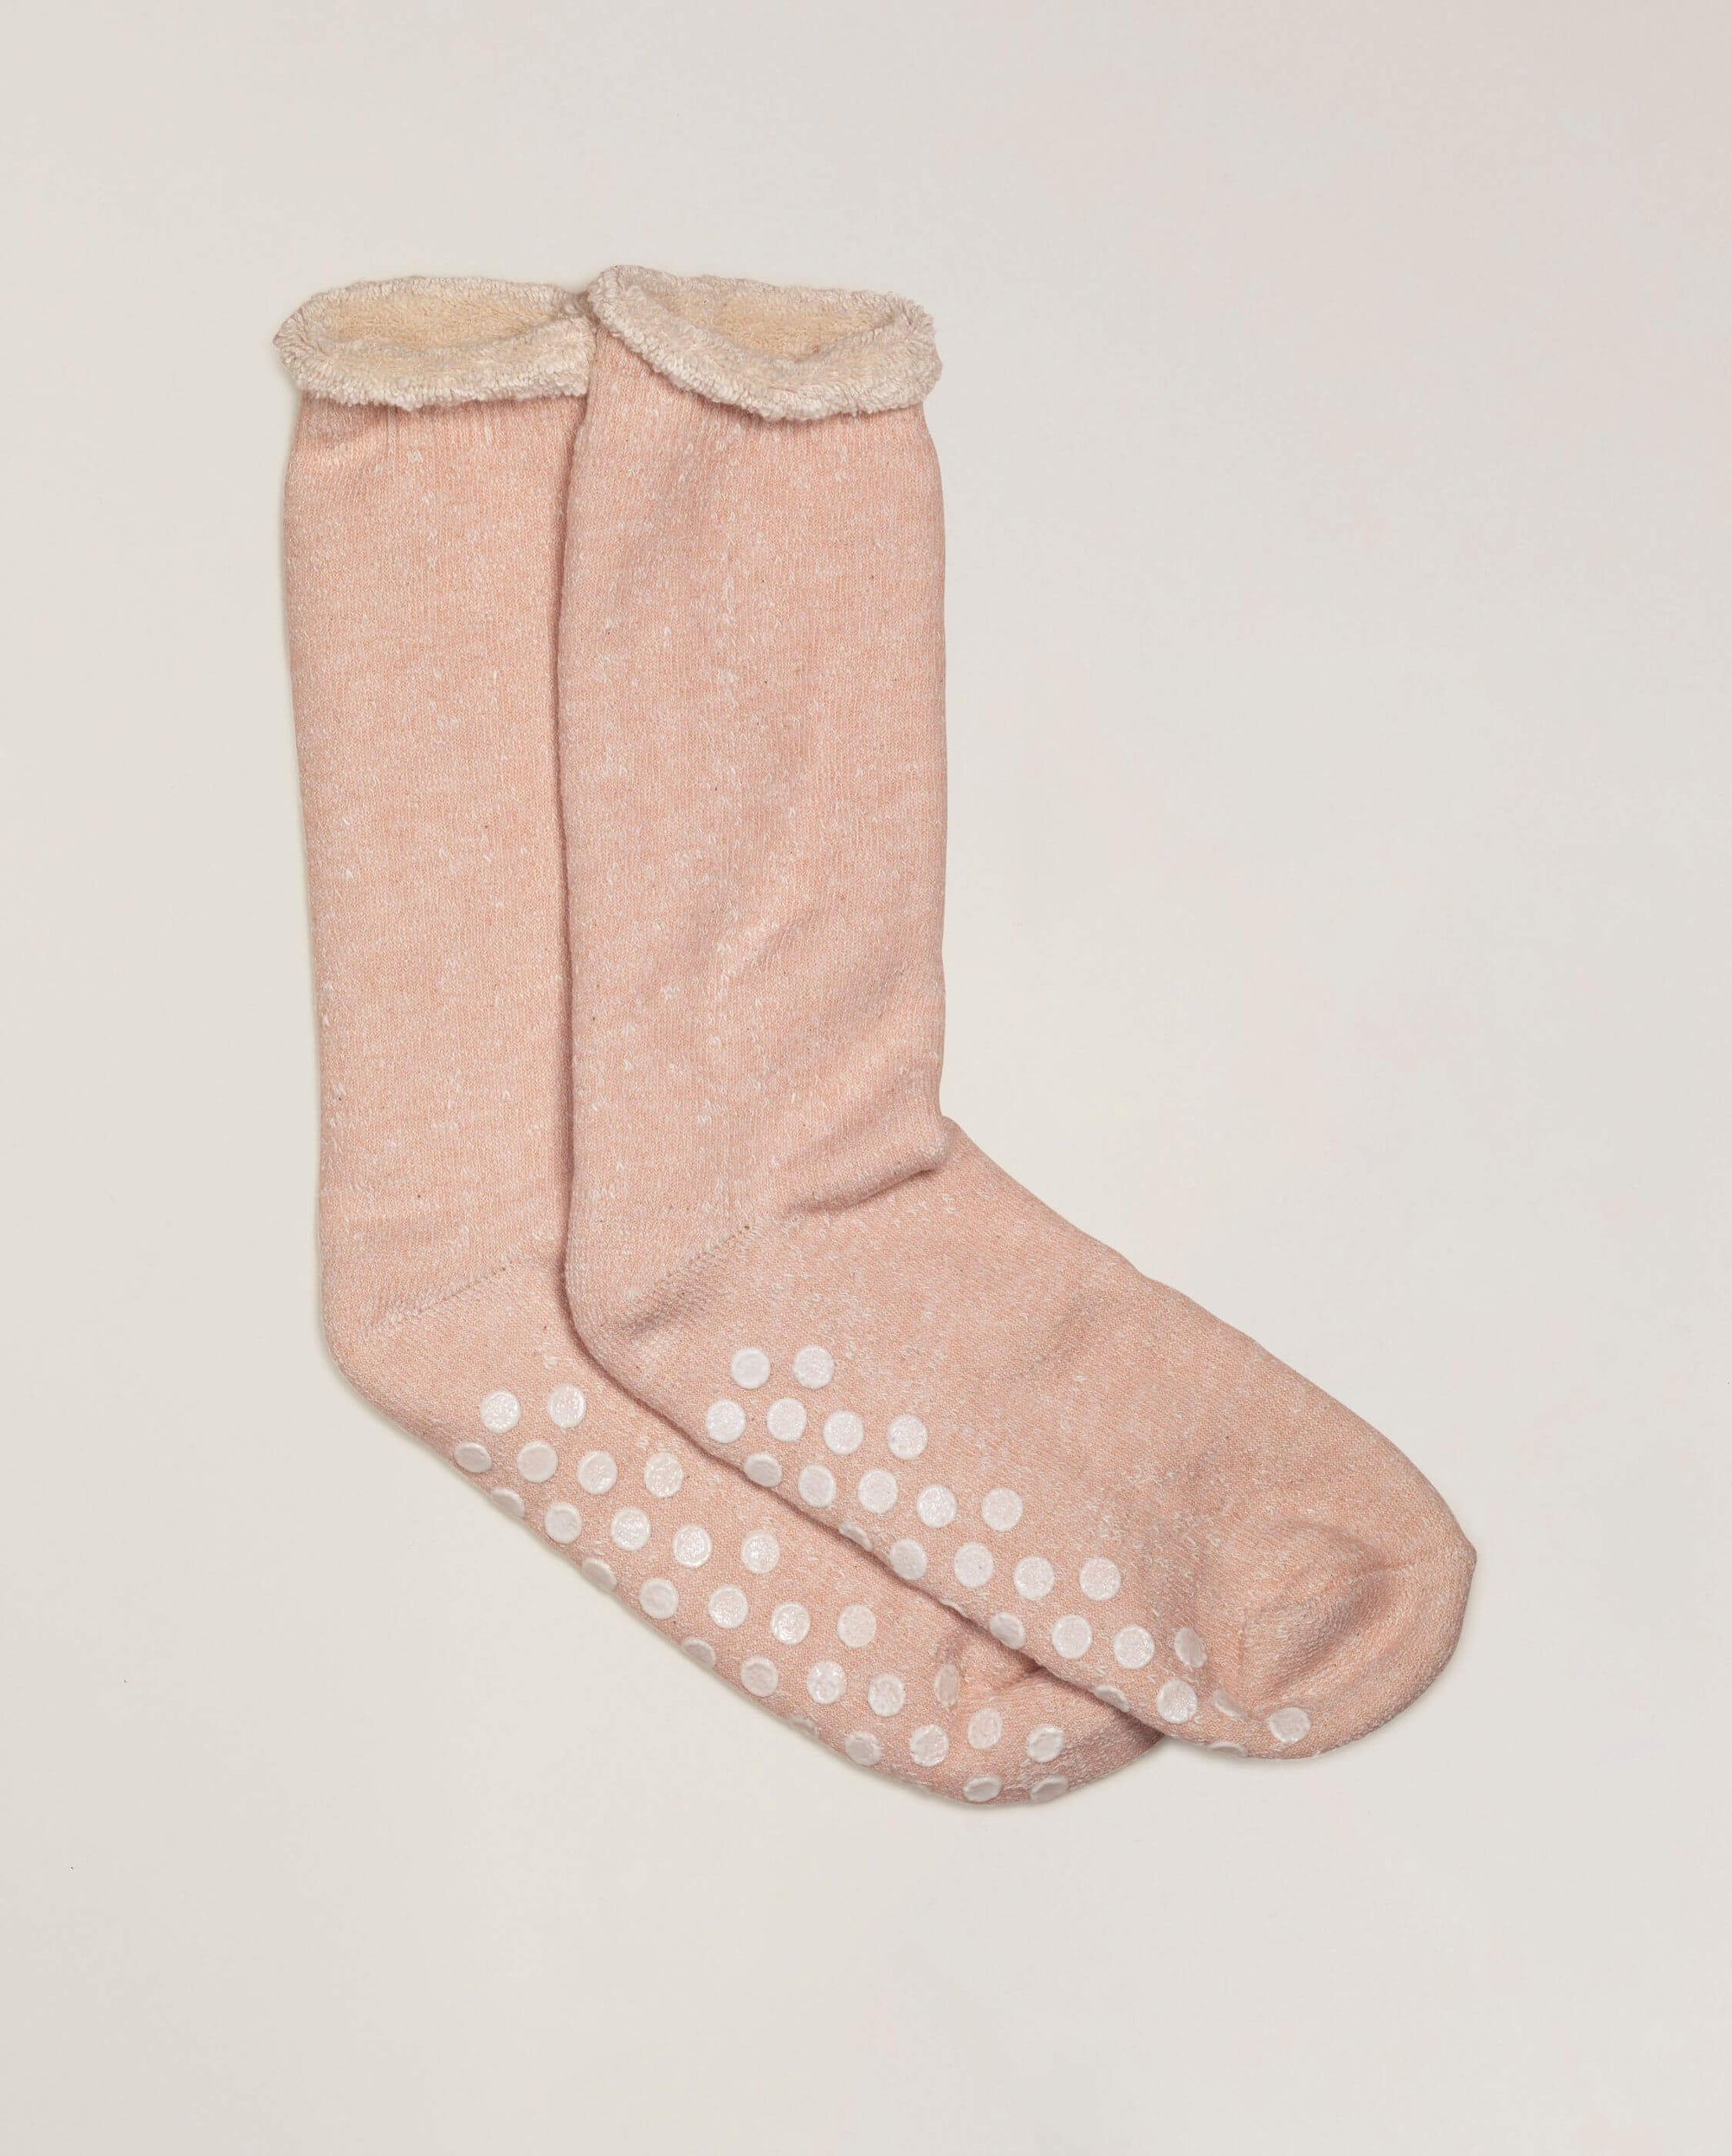 Men's slipper socks, powder pink